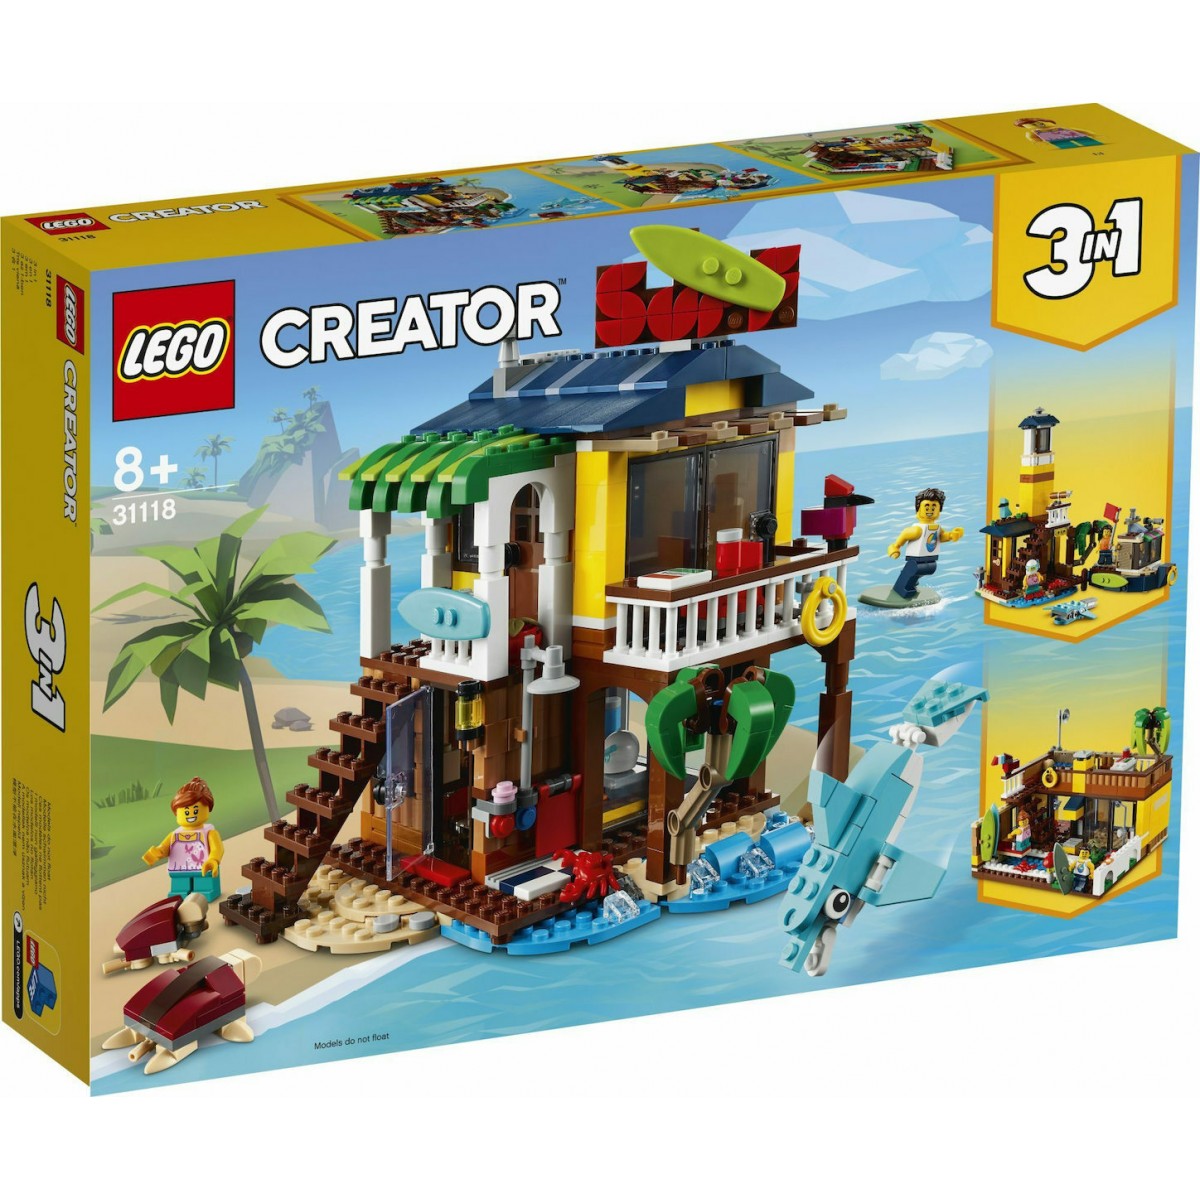 LEGO CREATOR 31118 SURFER BEACH HOUSE